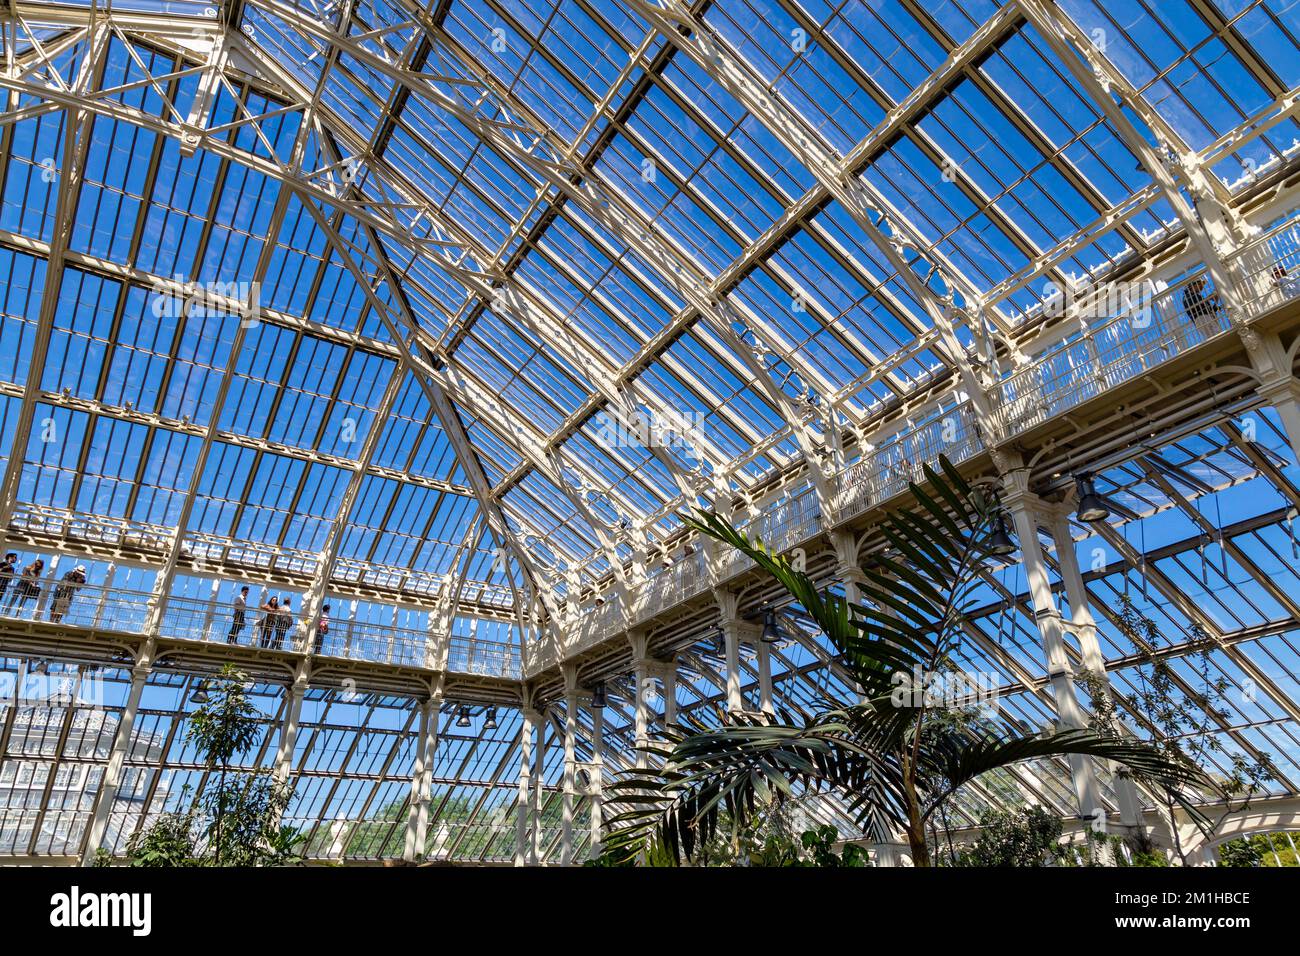 Copertura in ferro e vetro e mezzanine passerelle di recentemente ristrutturato e riaperto Casa Clima temperato in Kew Gardens, London, Regno Unito Foto Stock